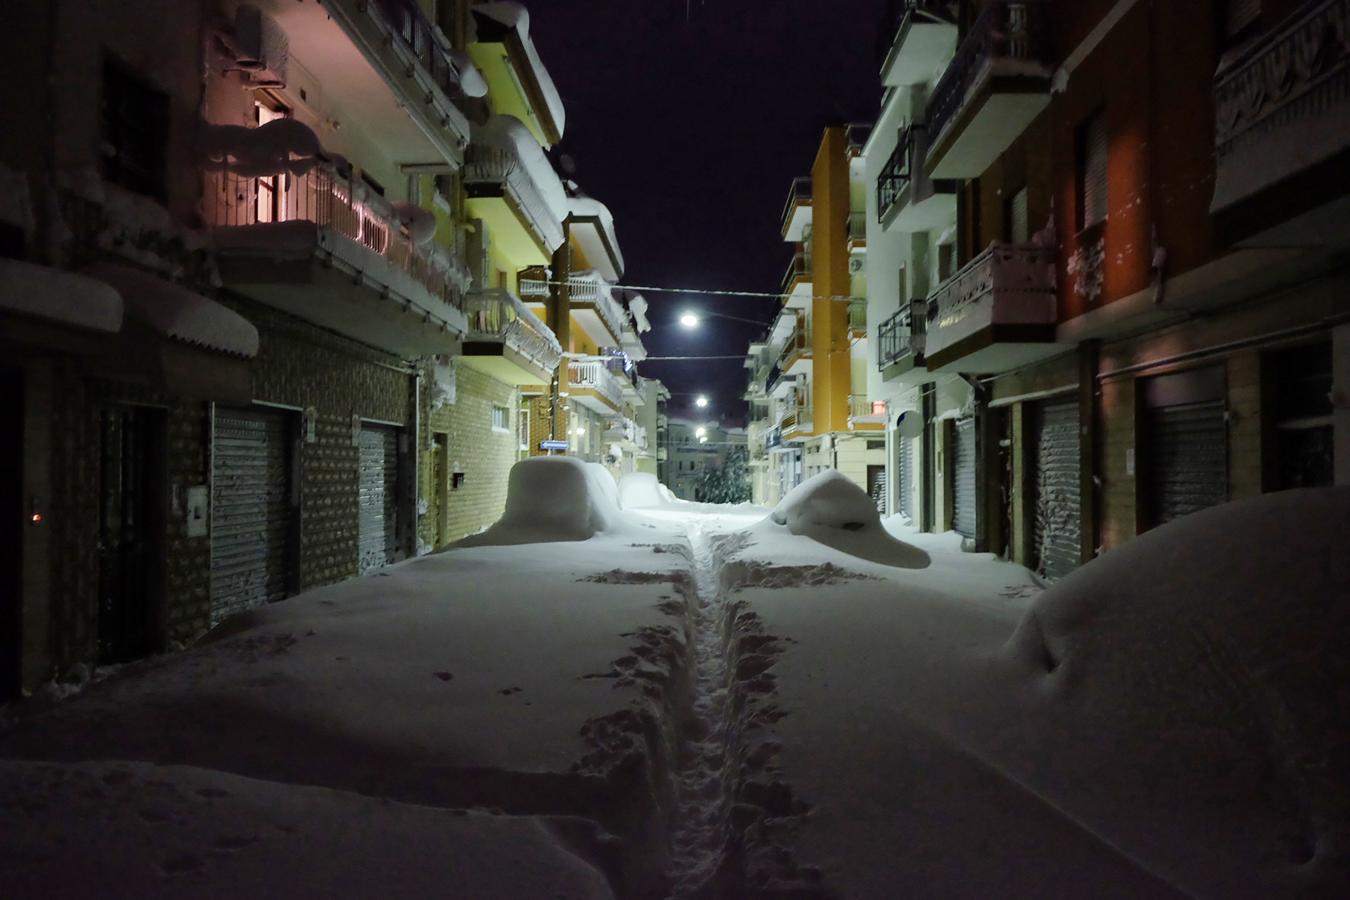 La nieve cubre una calle de la localidad italiana de Santeramo in Colle, situada al sur del país